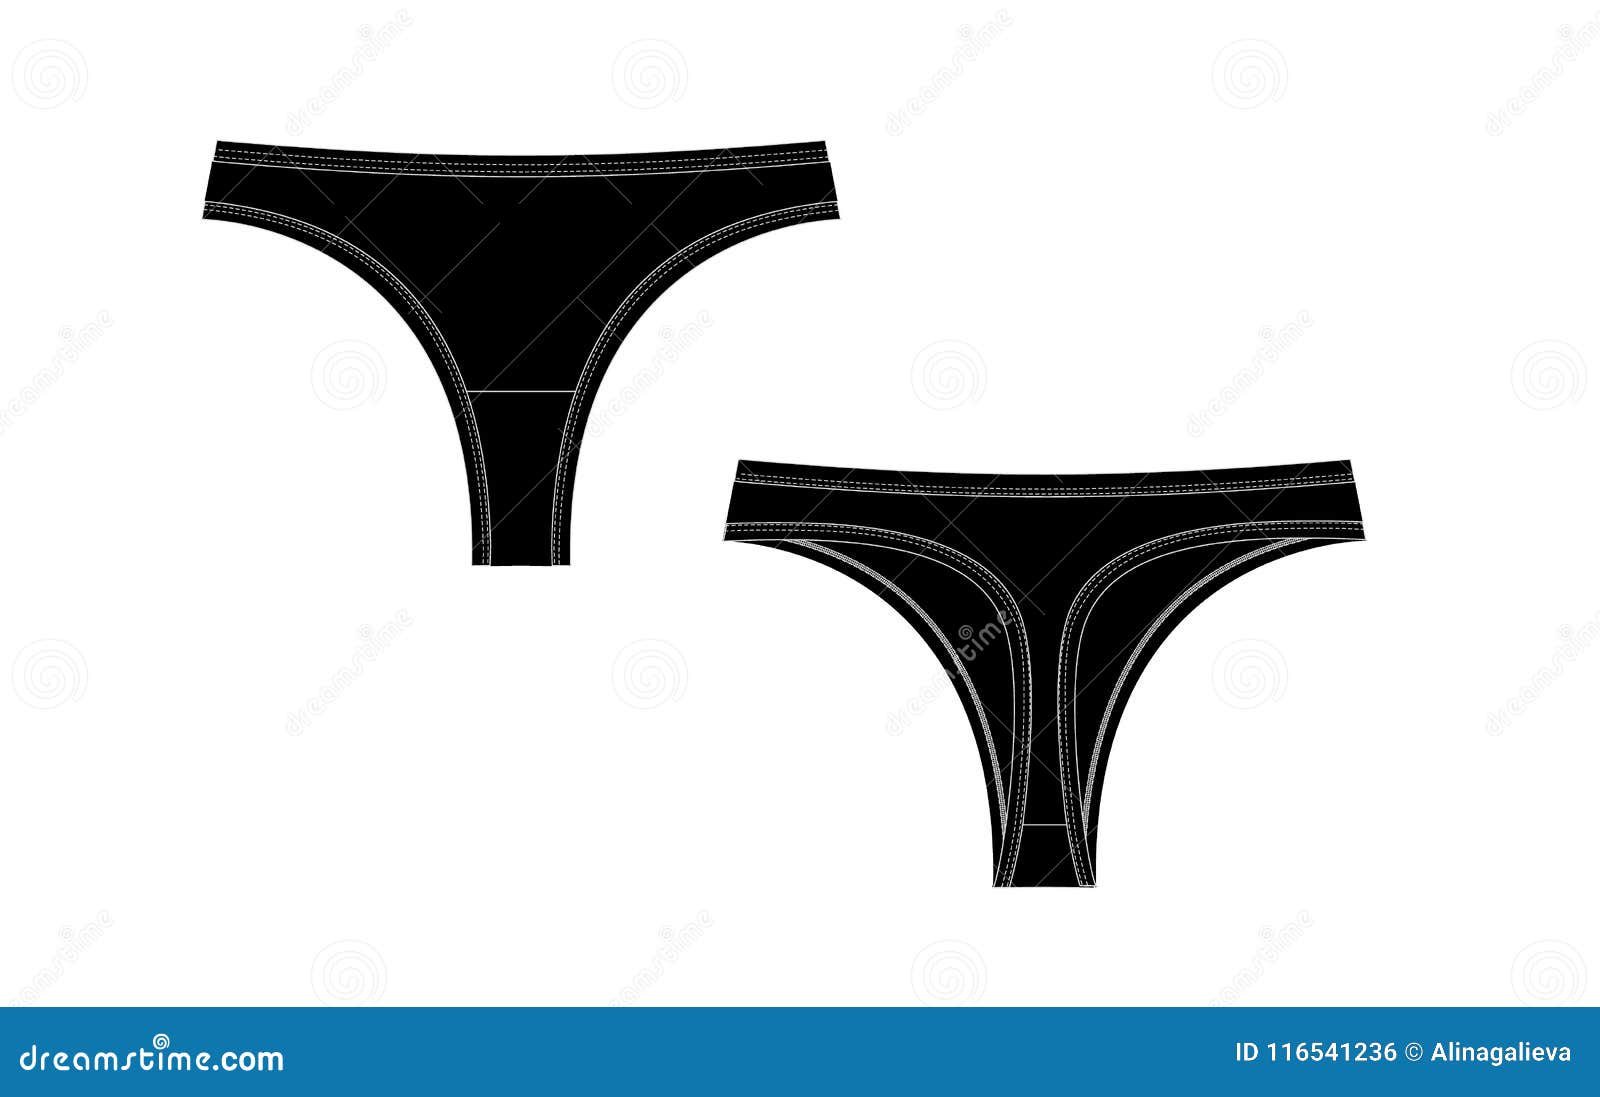 Jockey Women's Panties | Womens Underwear Sale